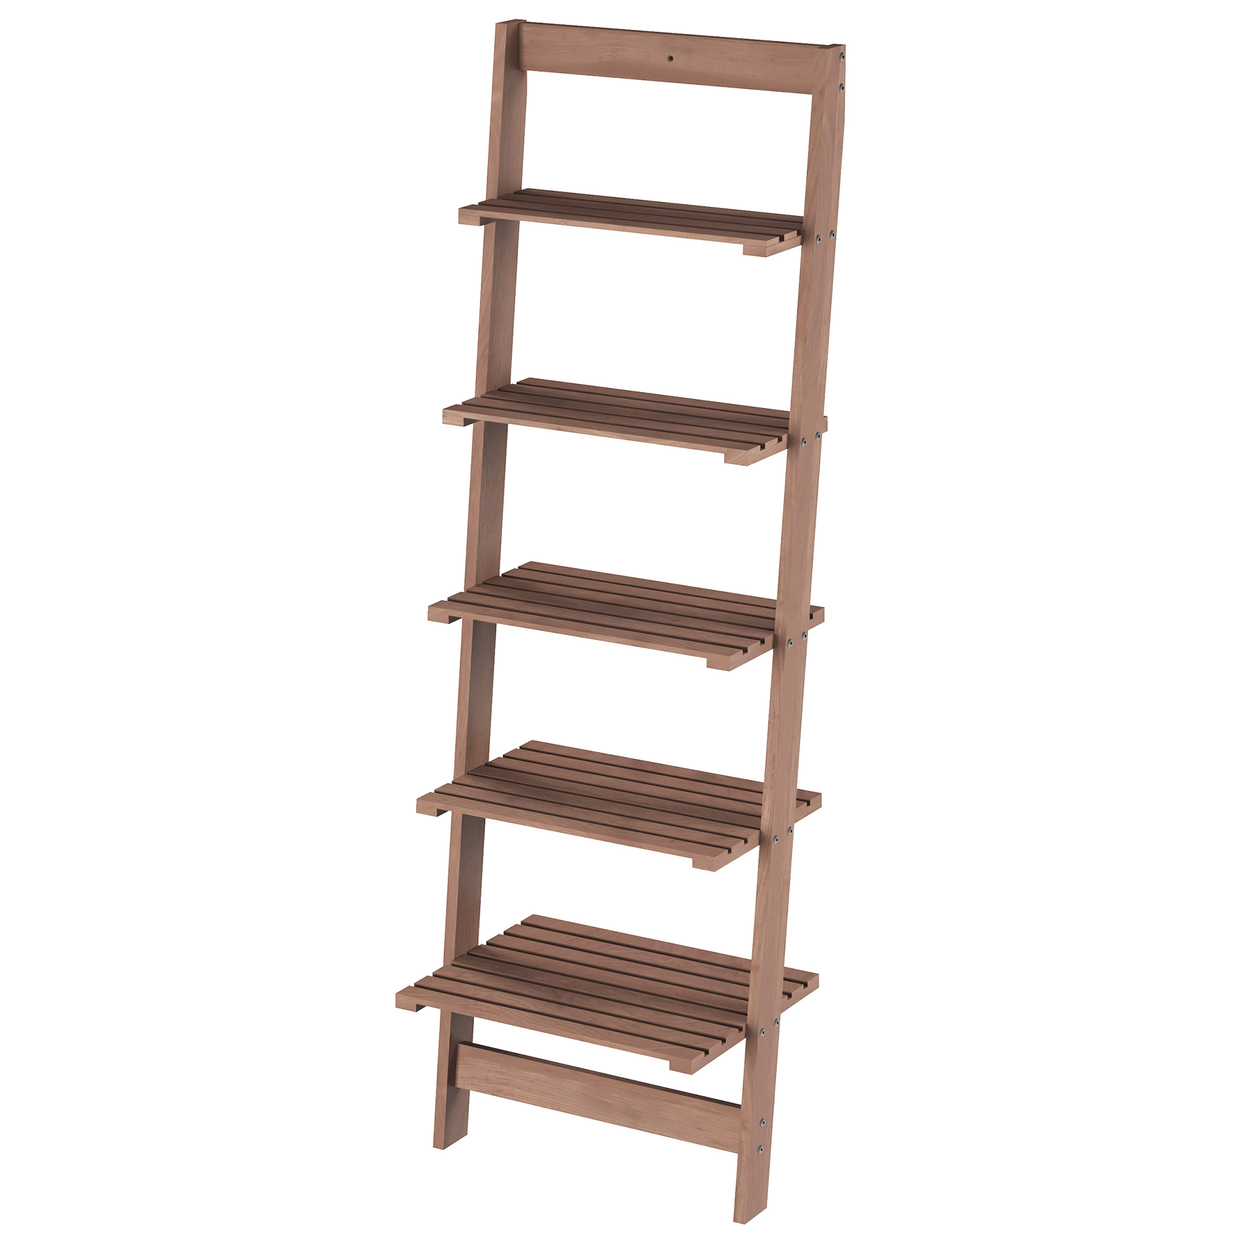 Five Tier Ladder Style Wooden Storage Bookshelf Display Brown Walnut Finish